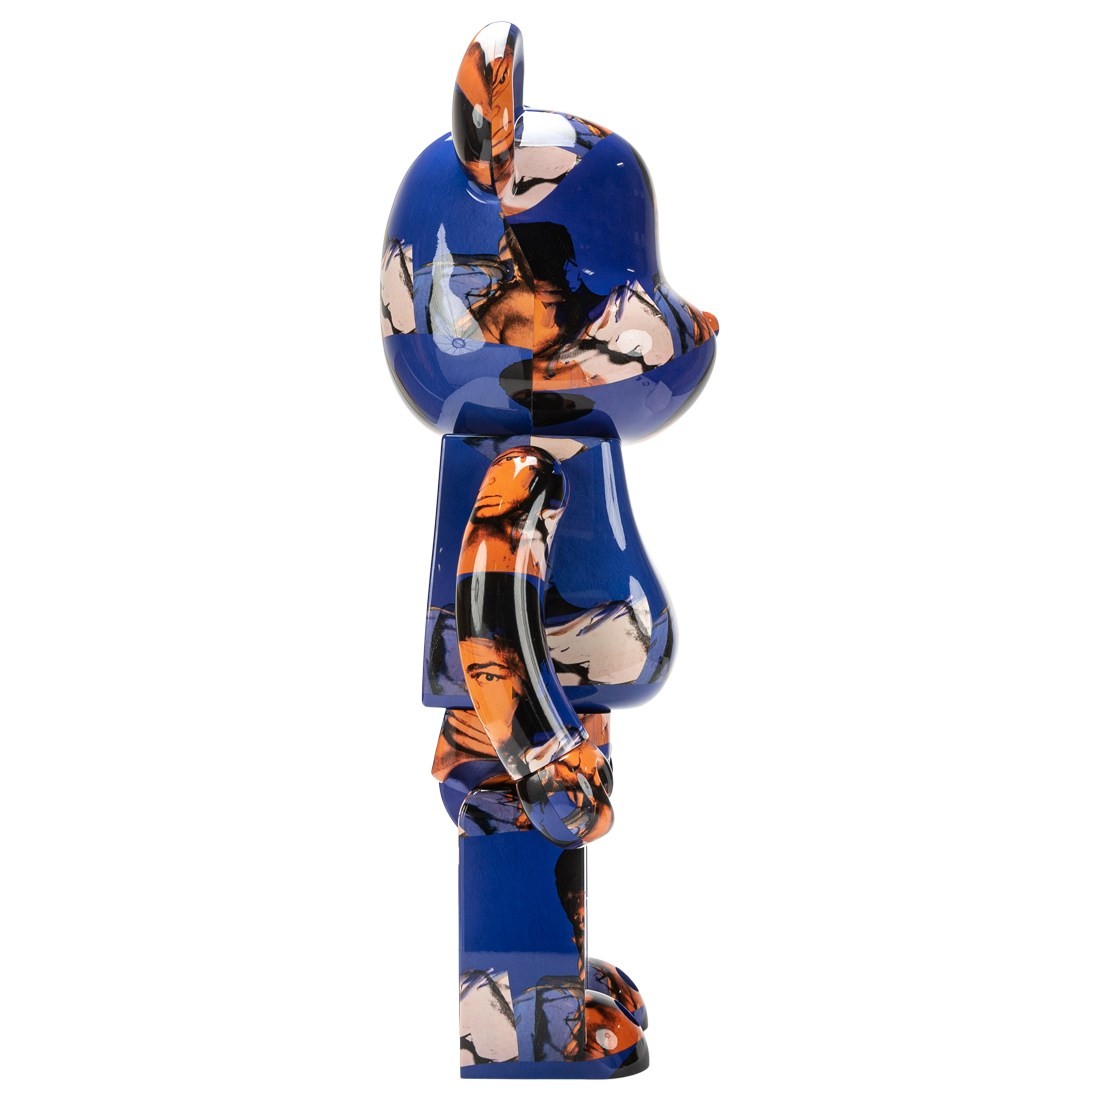 Medicom Andy Warhol Muhammad Ali 1000% Bearbrick Figure (blue)